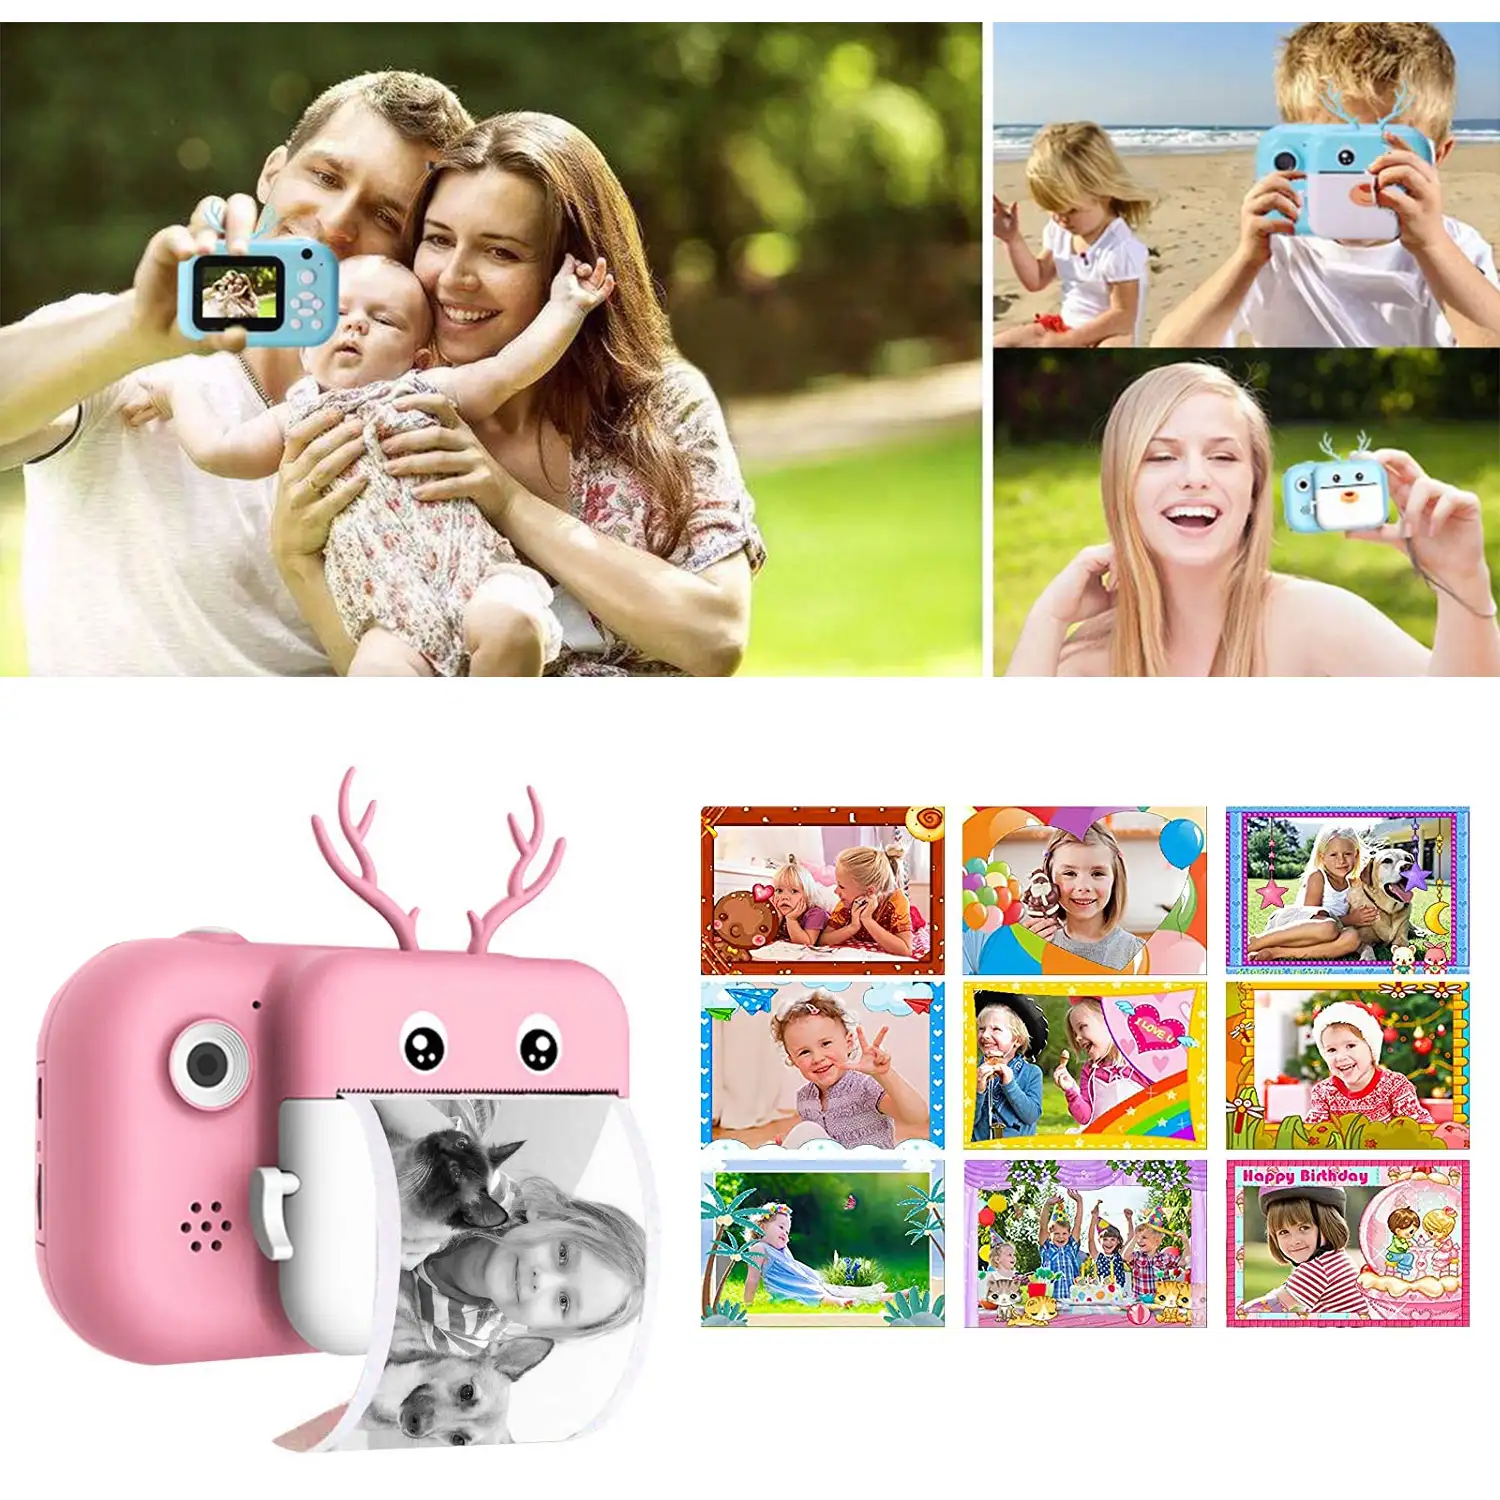 Cámara Ciervo digital de fotos 40mpx y video 2,5K para niños. Impresión instantánea de tus fotos preferidas. Doble cámara, para selfies.